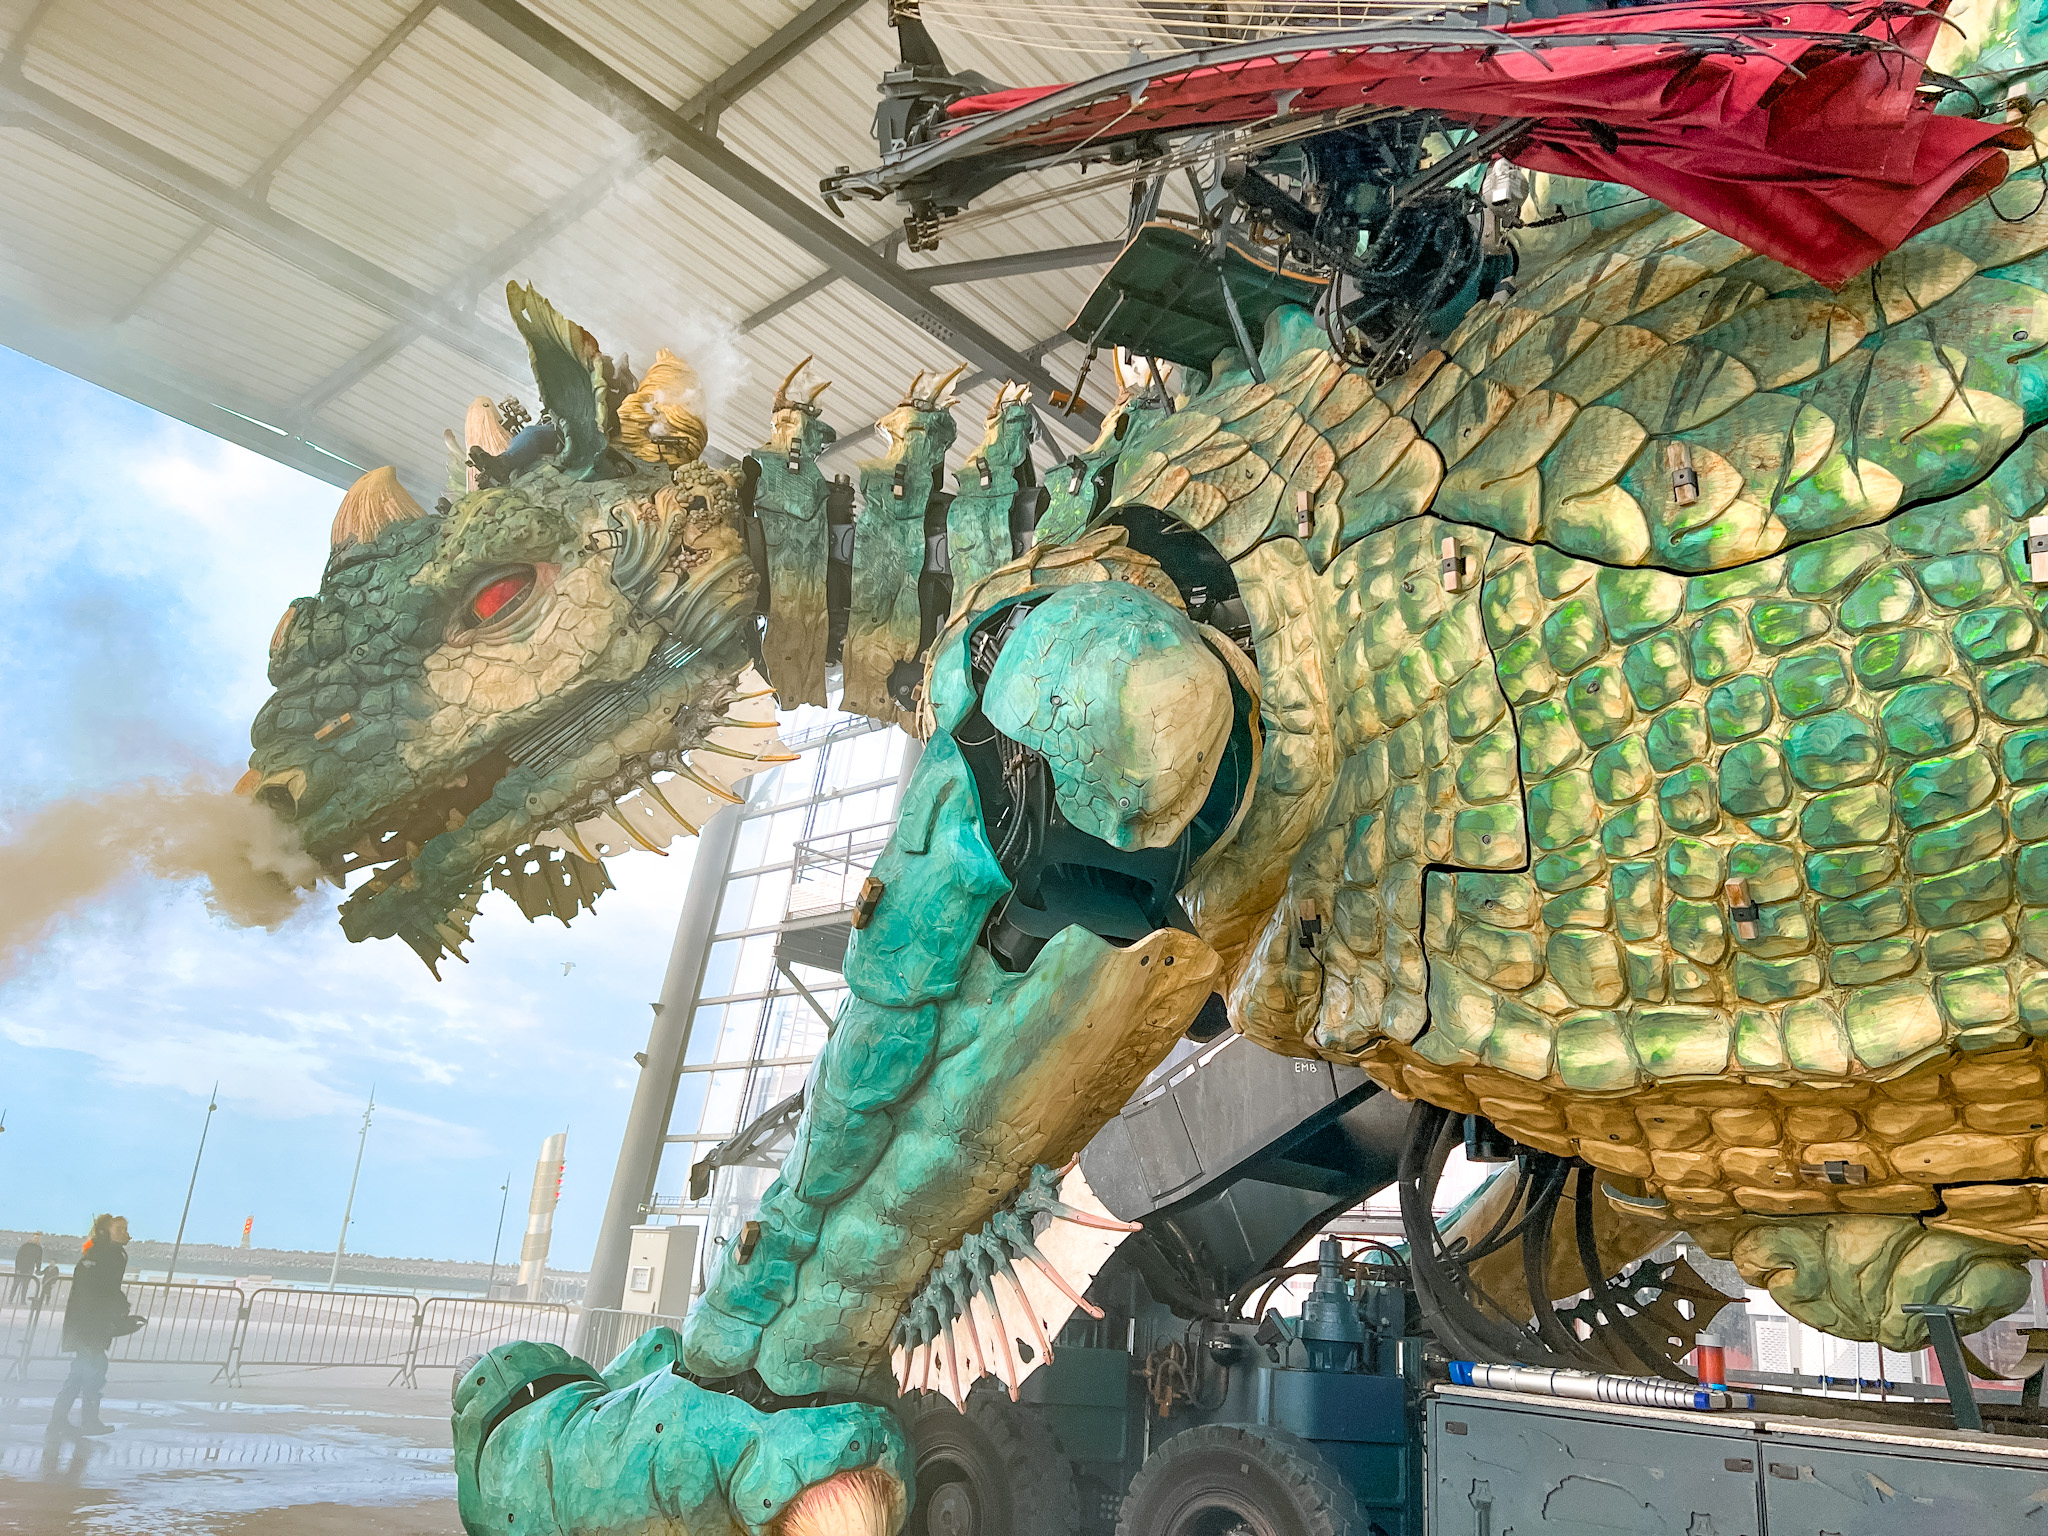 Activité balade sur le dos d'un dragon Calais Côte d'Opale